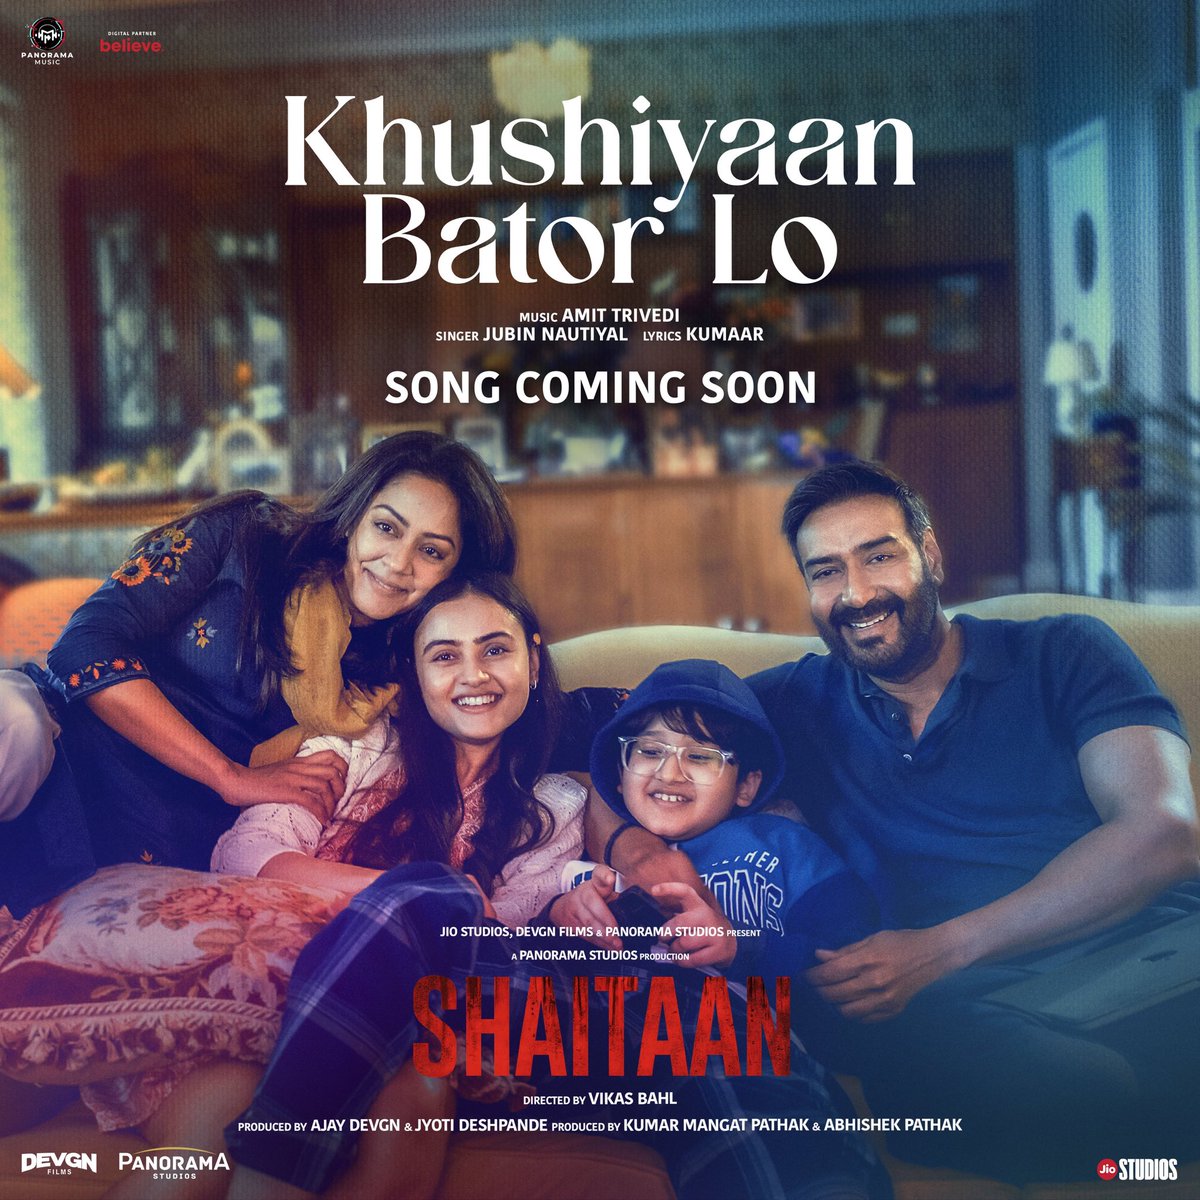 #KhushiyaanBatorLo from #Shaitaan Coming Soon.